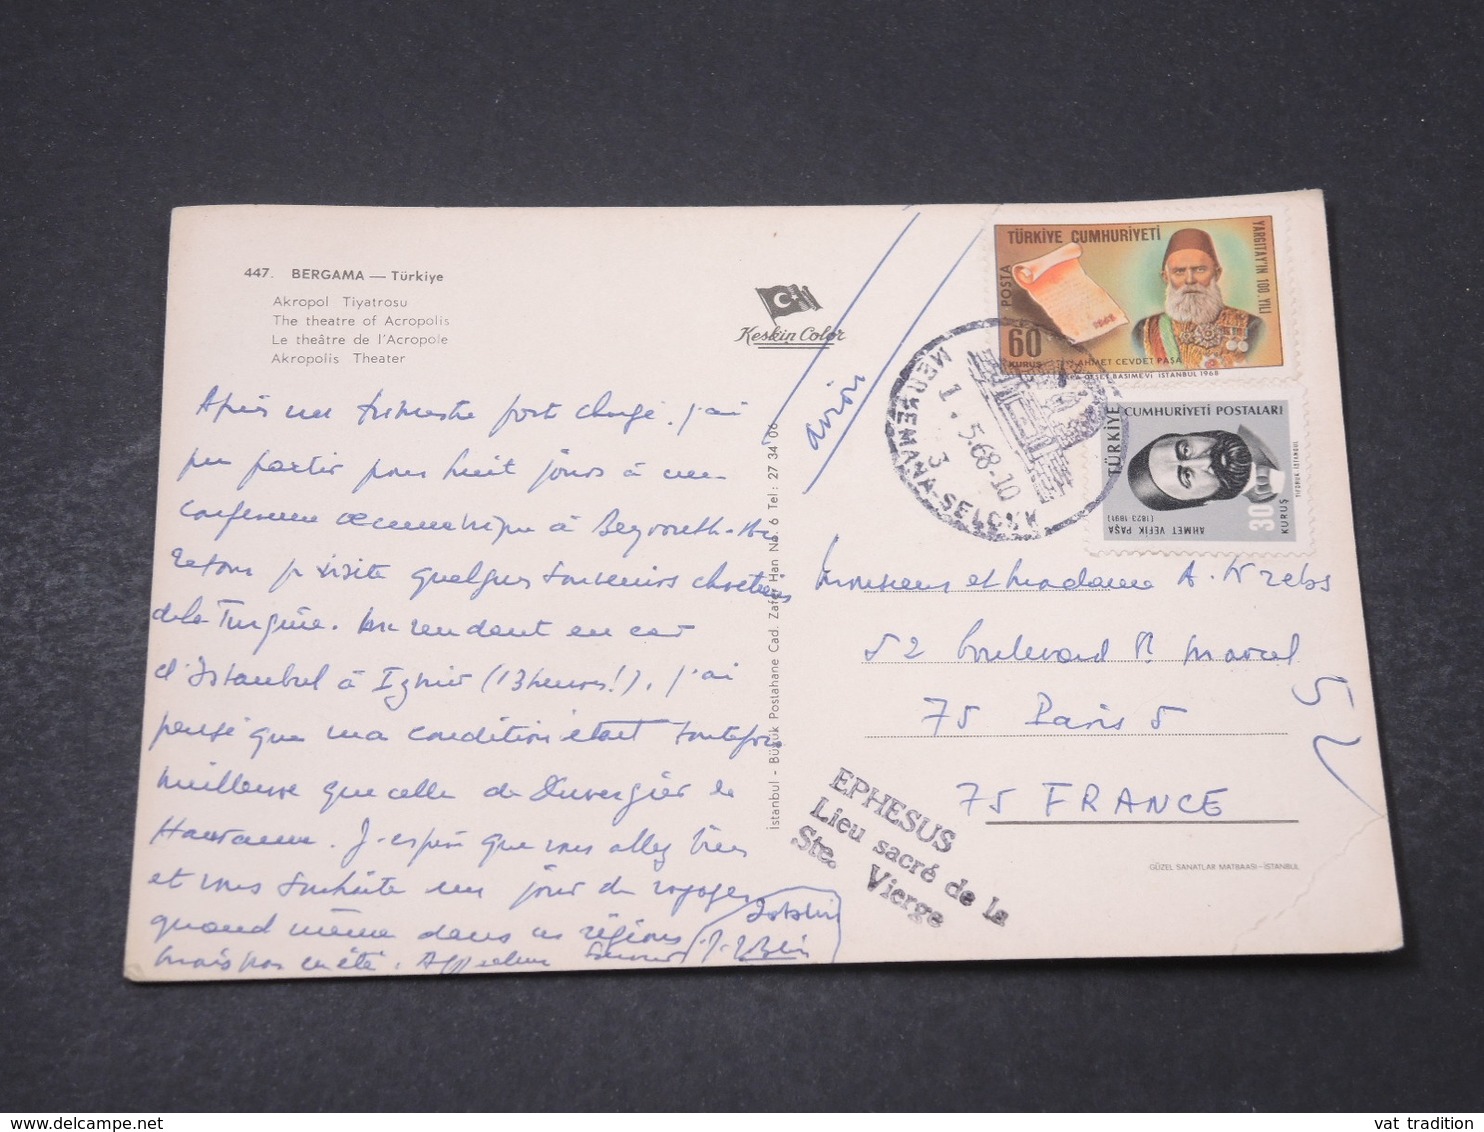 TURQUIE - Affranchissement De Bergama Sur Carte Postale Pour La France En 1968 - L 16701 - Lettres & Documents